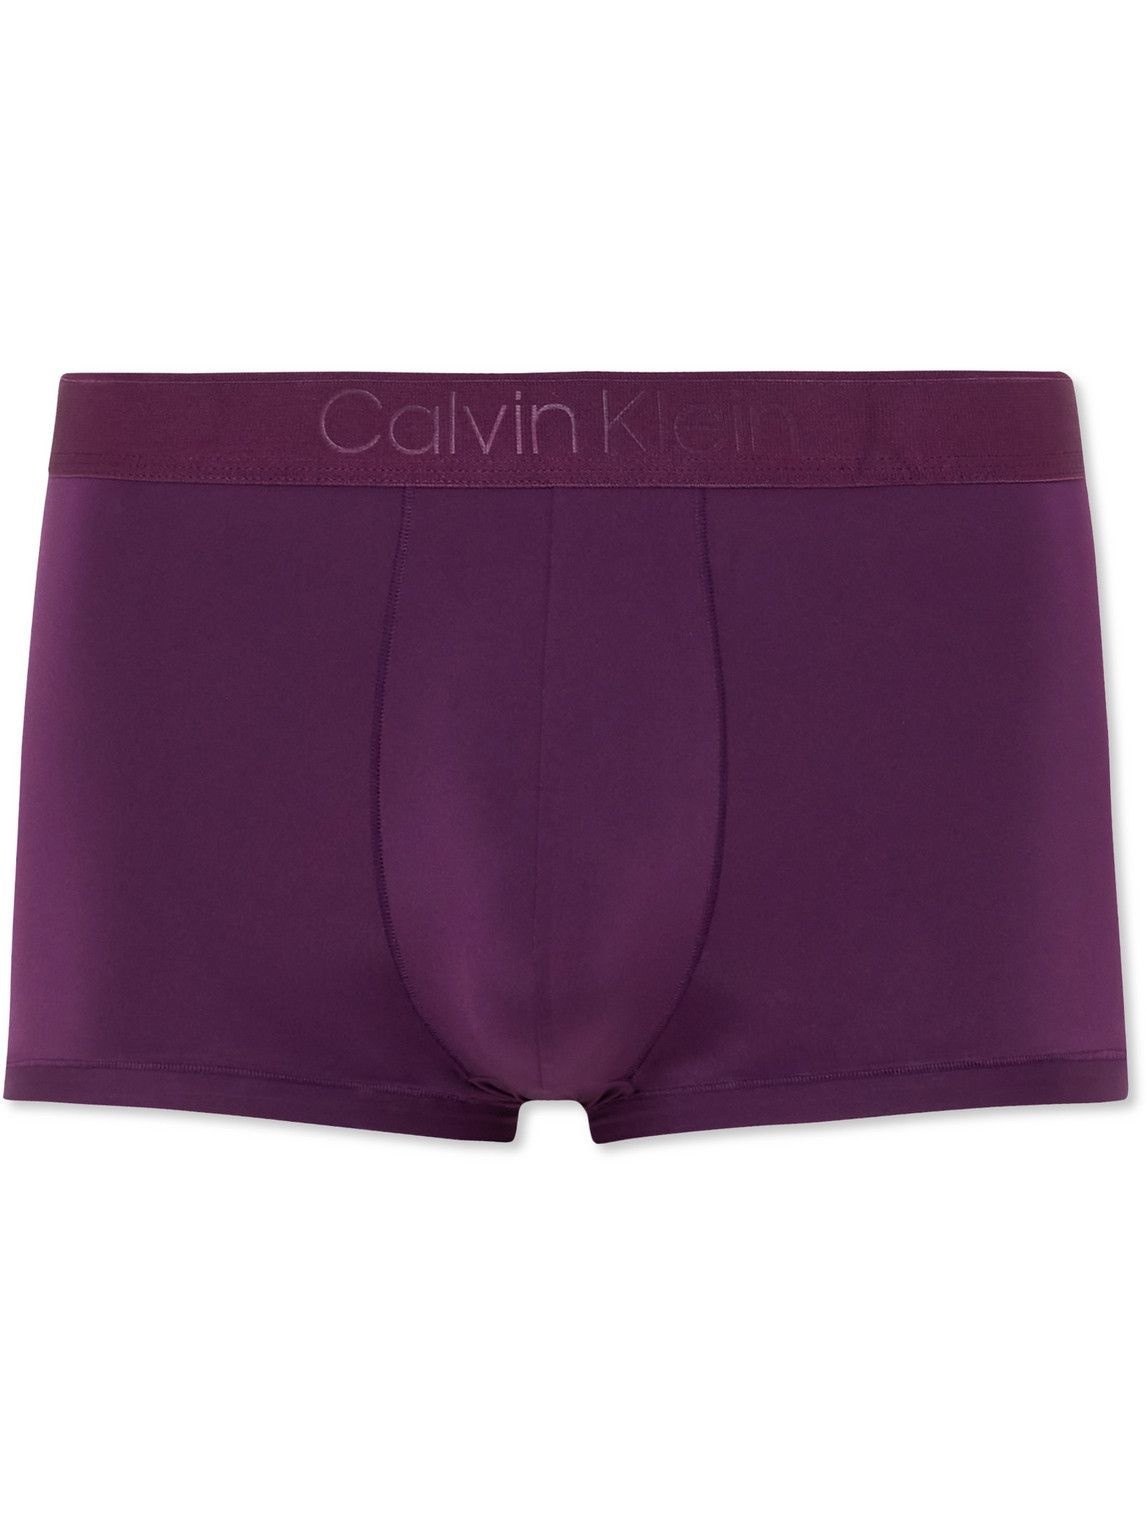 Purple Calvin Klein Underwear Clothing - JD Sports Global